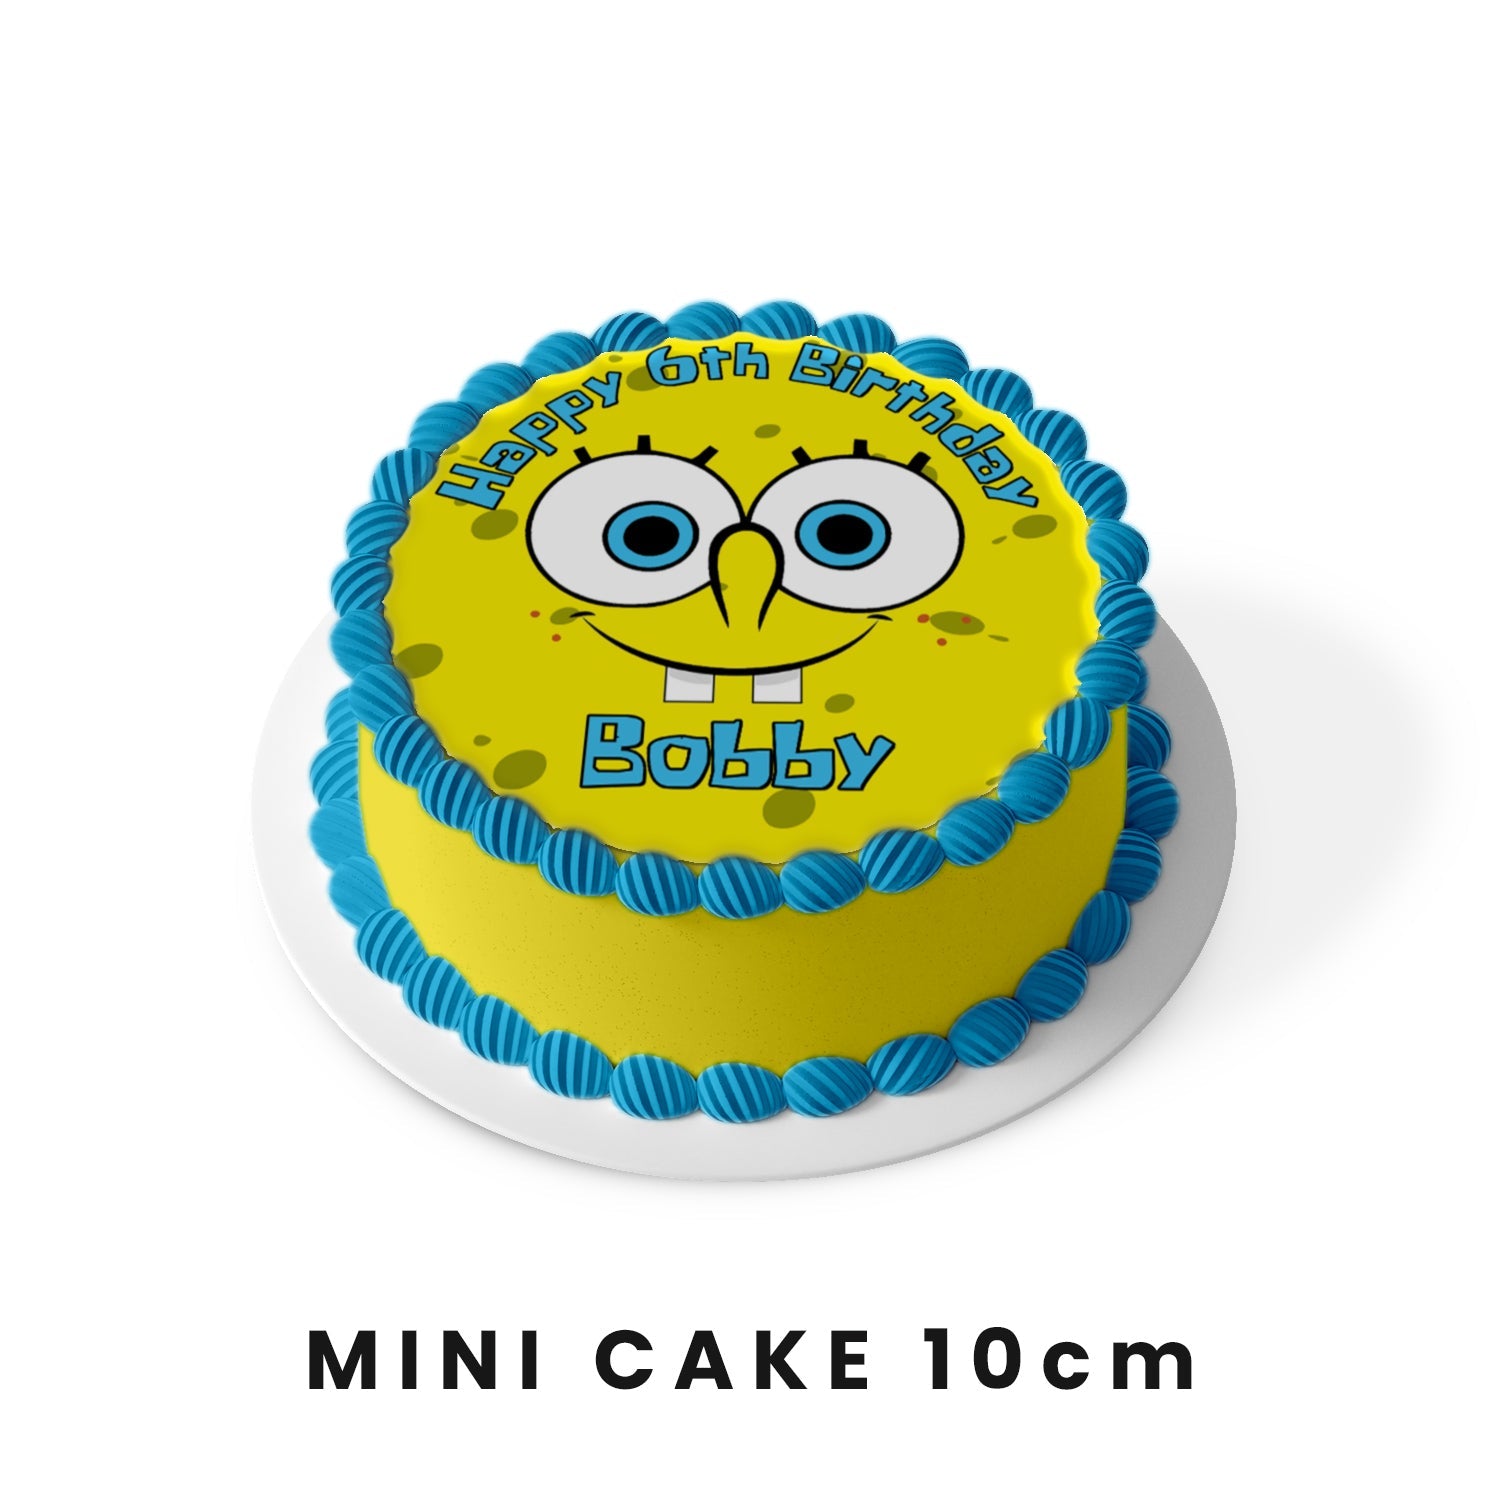 Round Spongebob edible sheet cake images